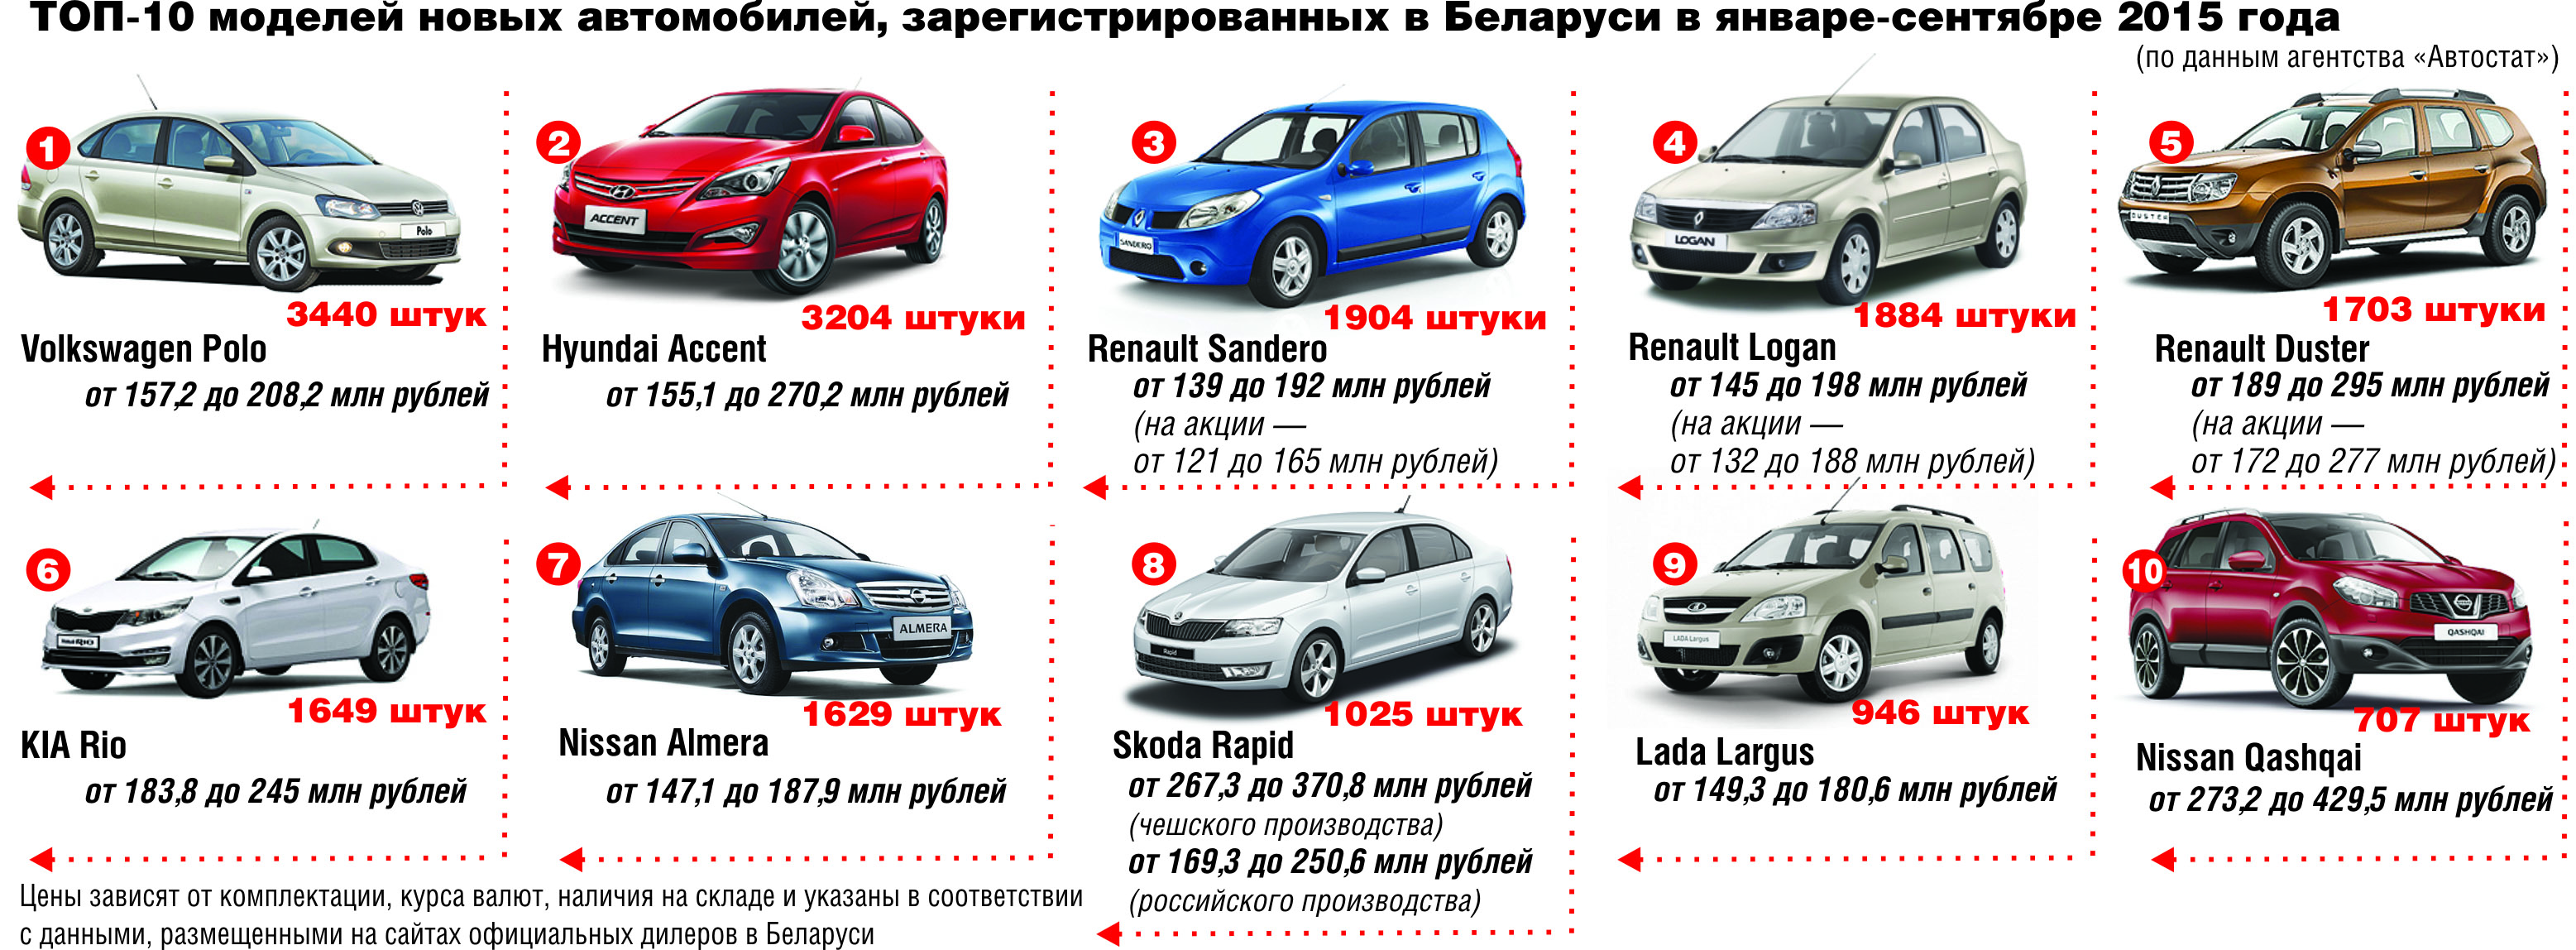 Автомобили в Белоруссии